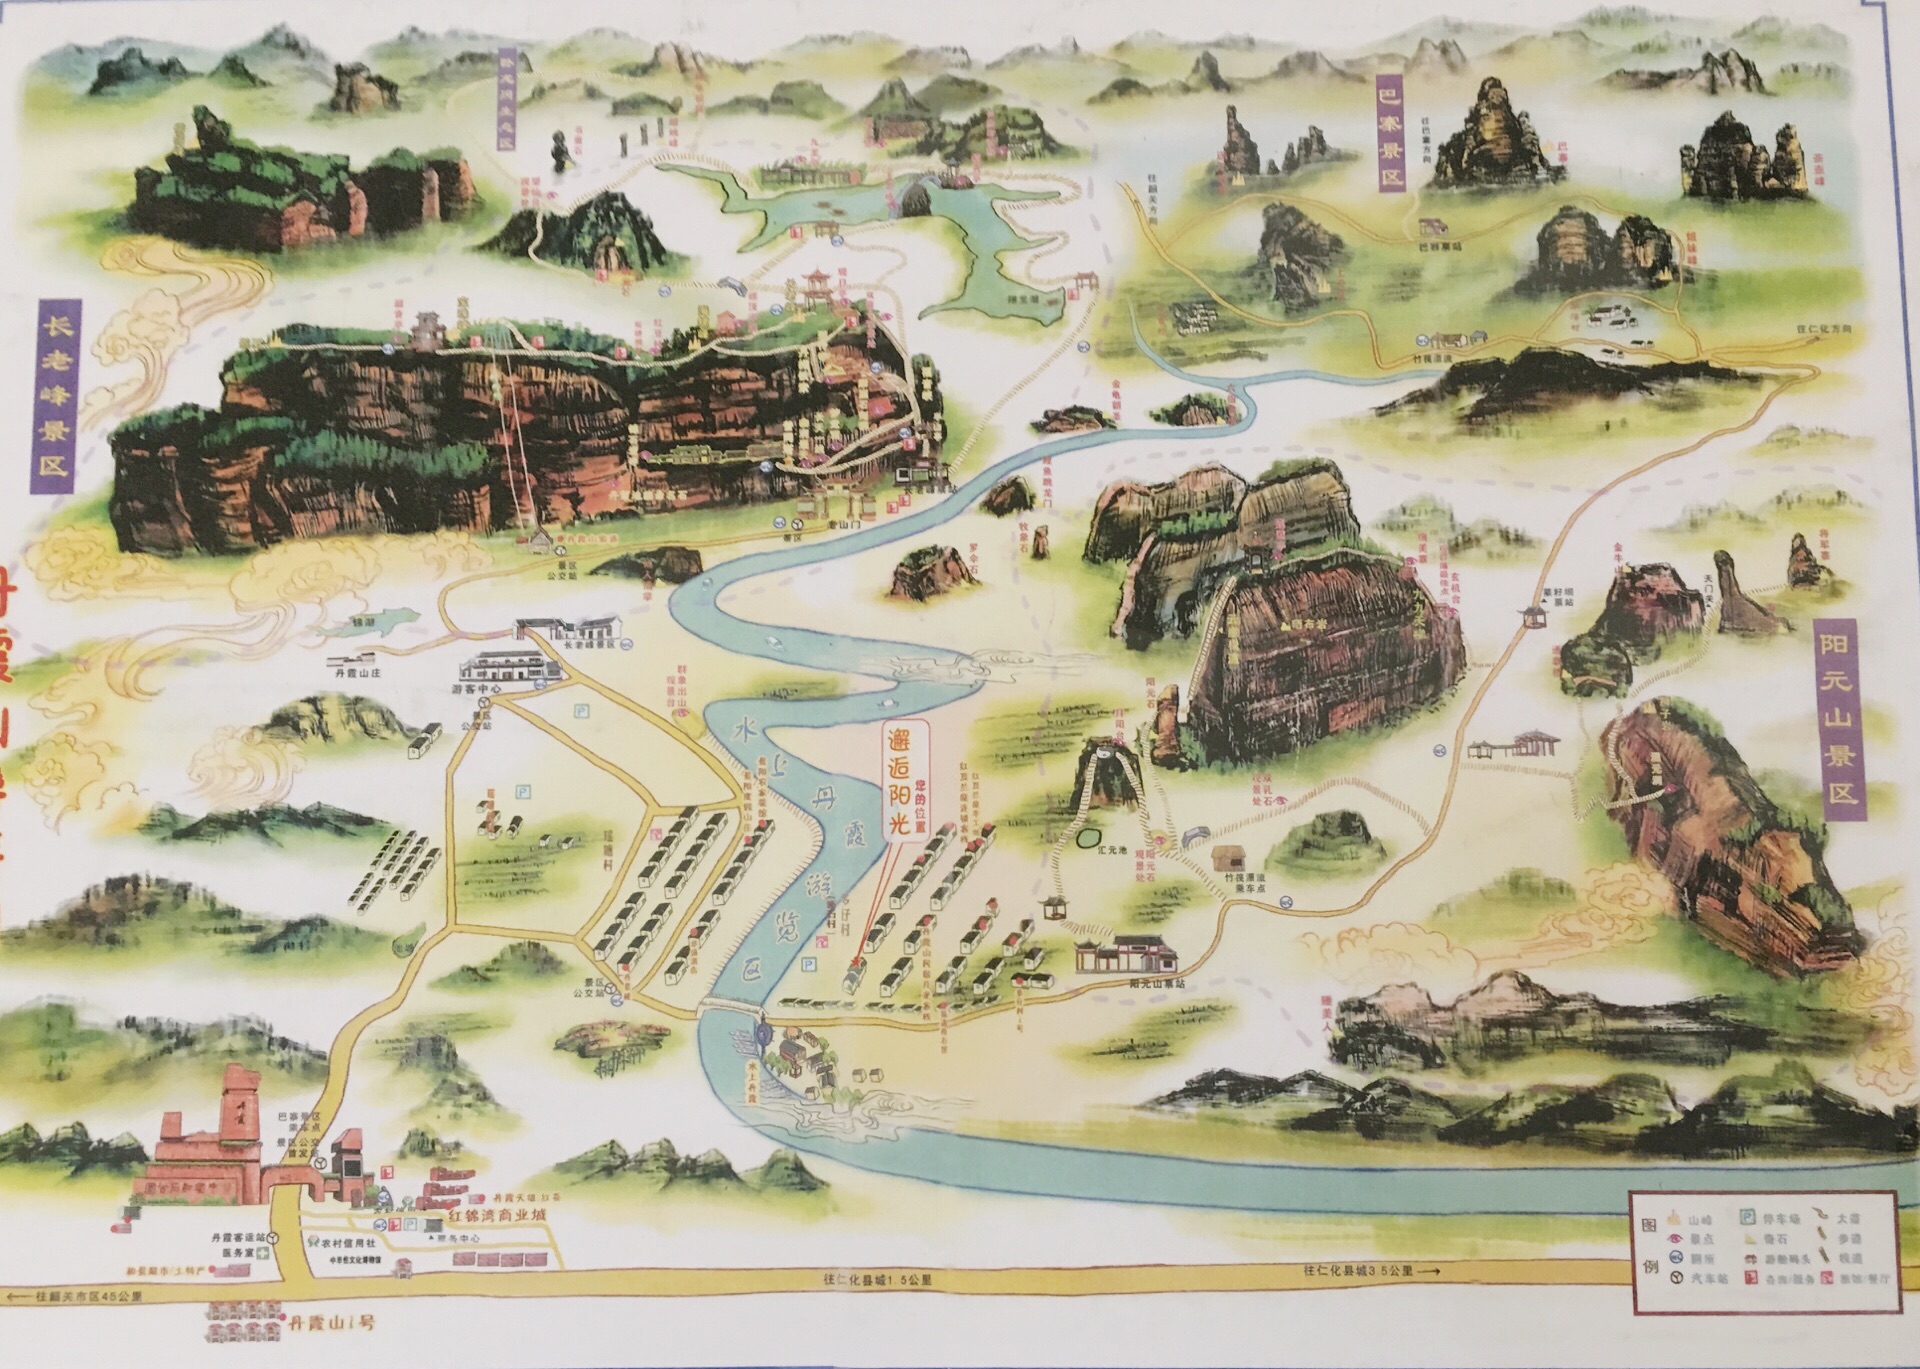 丹霞山长老峰地图图片